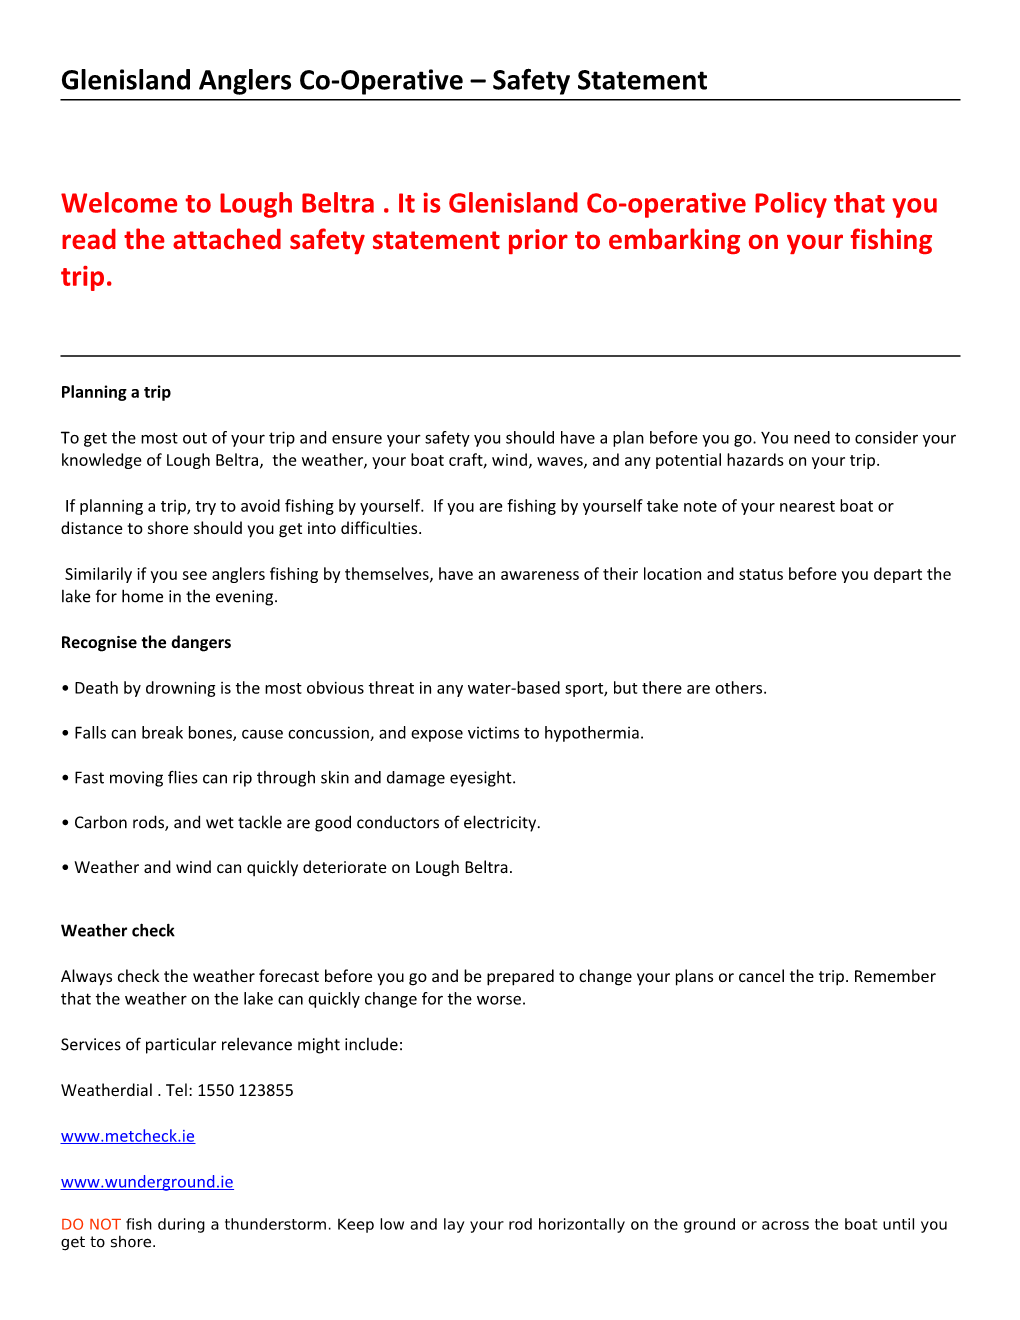 Glenisland Anglers Co-Operative Safety Statement